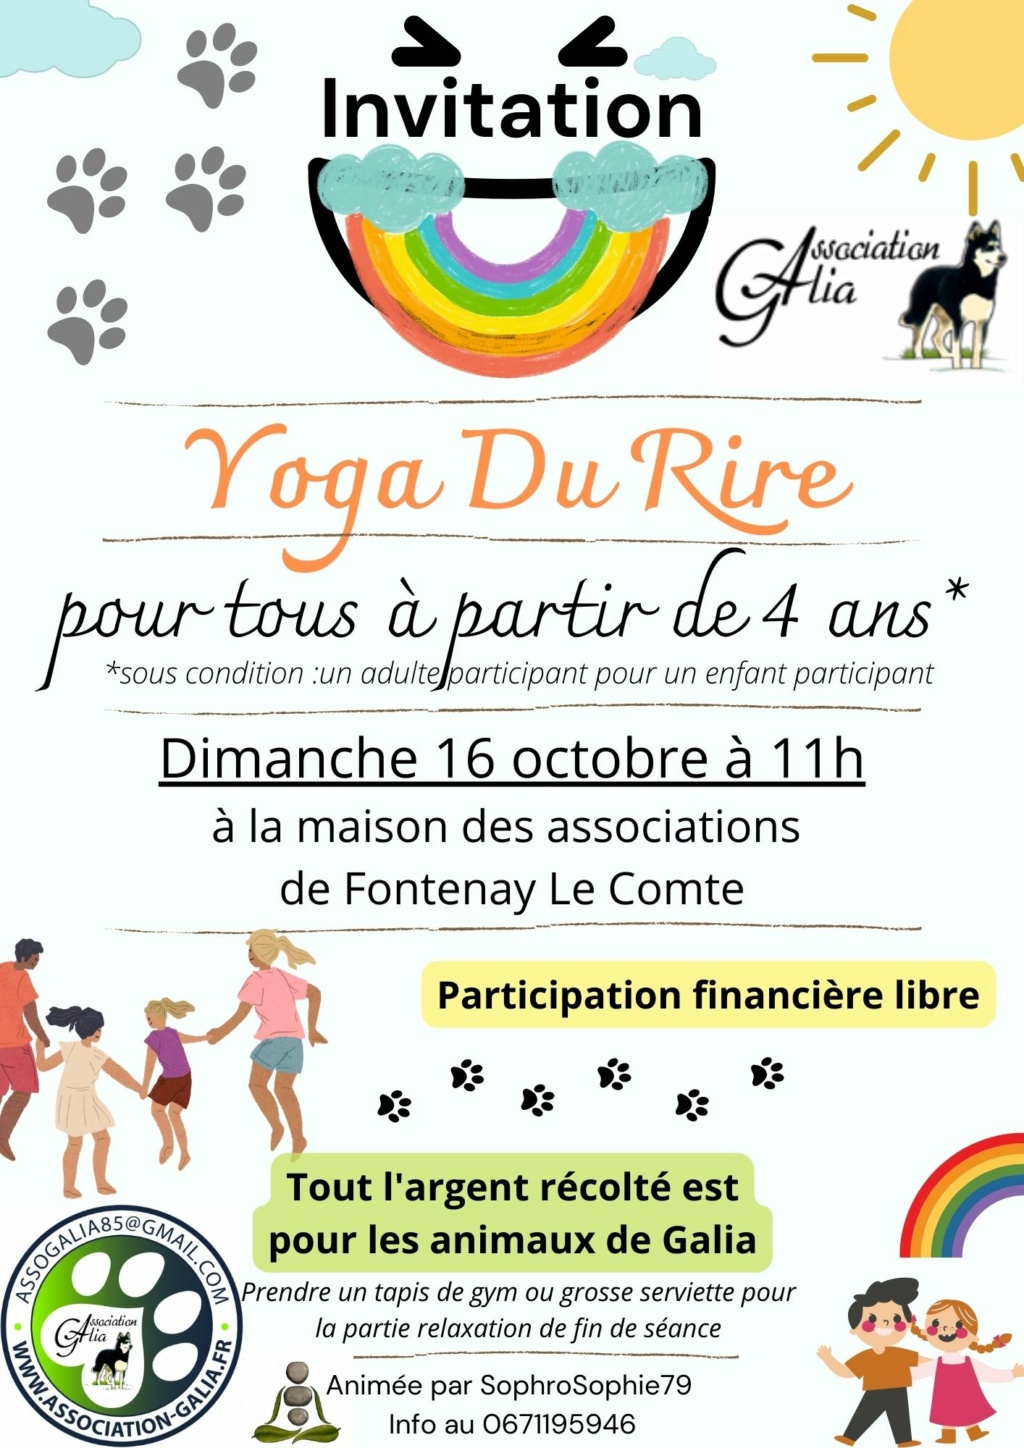 Yoga Du Rire pour tout âge à Fontenay Le Comte dimanche 16 octobre  Invita10